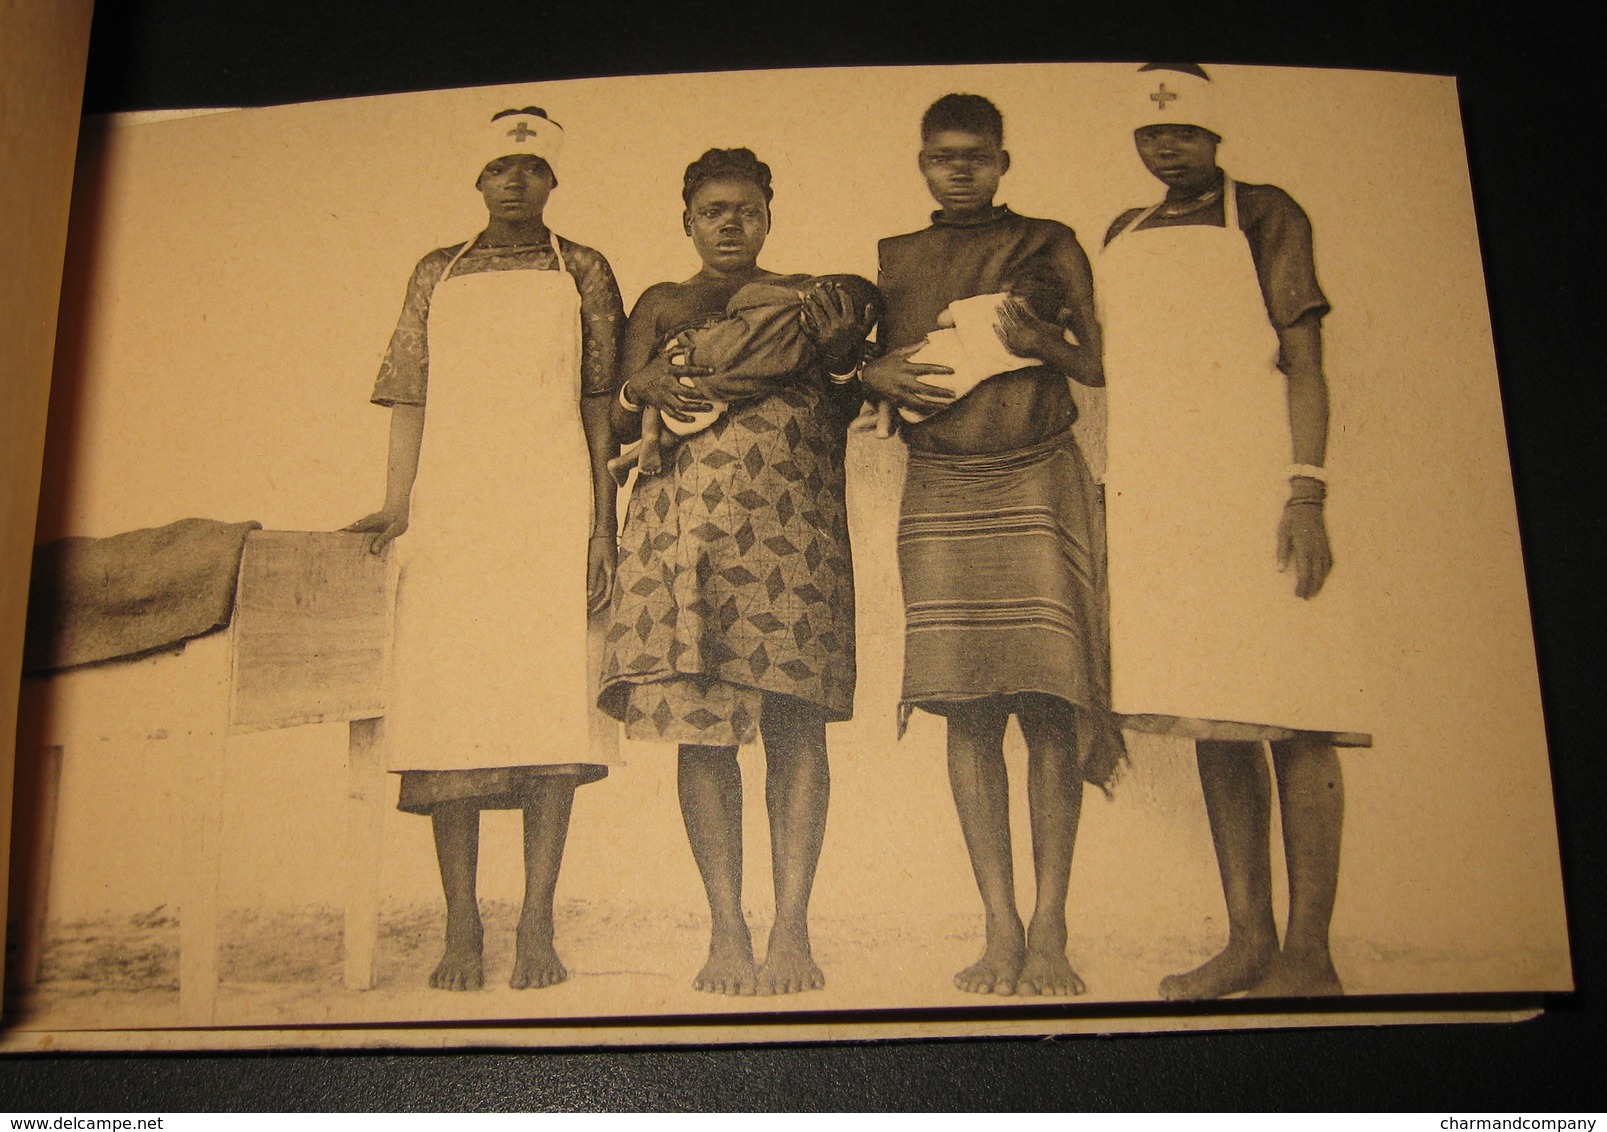 Afrique - Congo - Pawa -Ituri - Semaine de la Croix Rouge 1928 - complet 6 cartes - Voir scans et descriptif - Red Cross